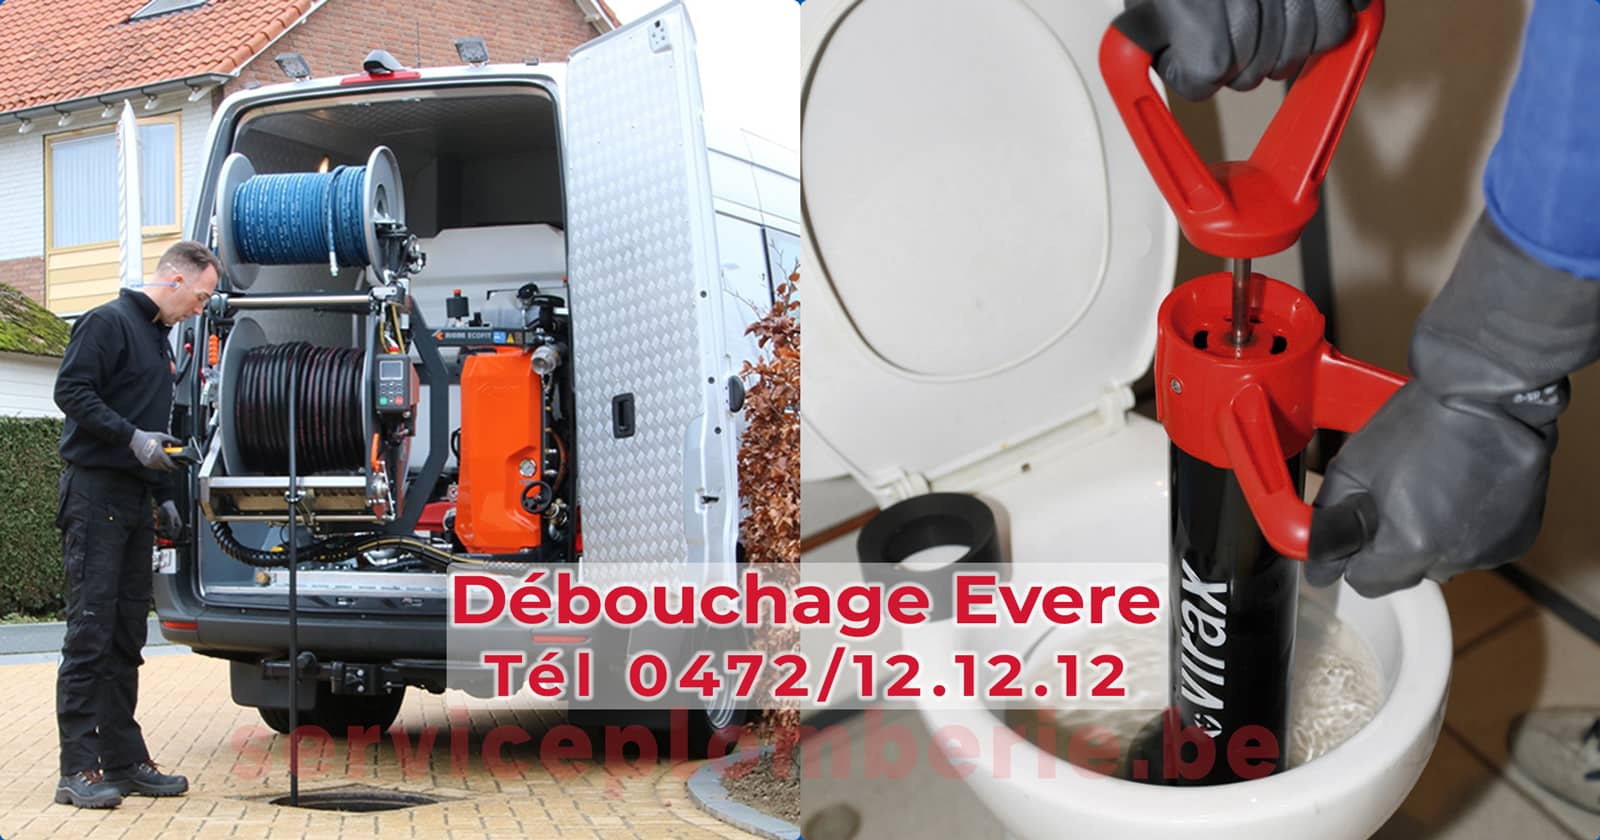 Débouchage Evere d'égout Service Plomberie Tél 0472/12.12.12